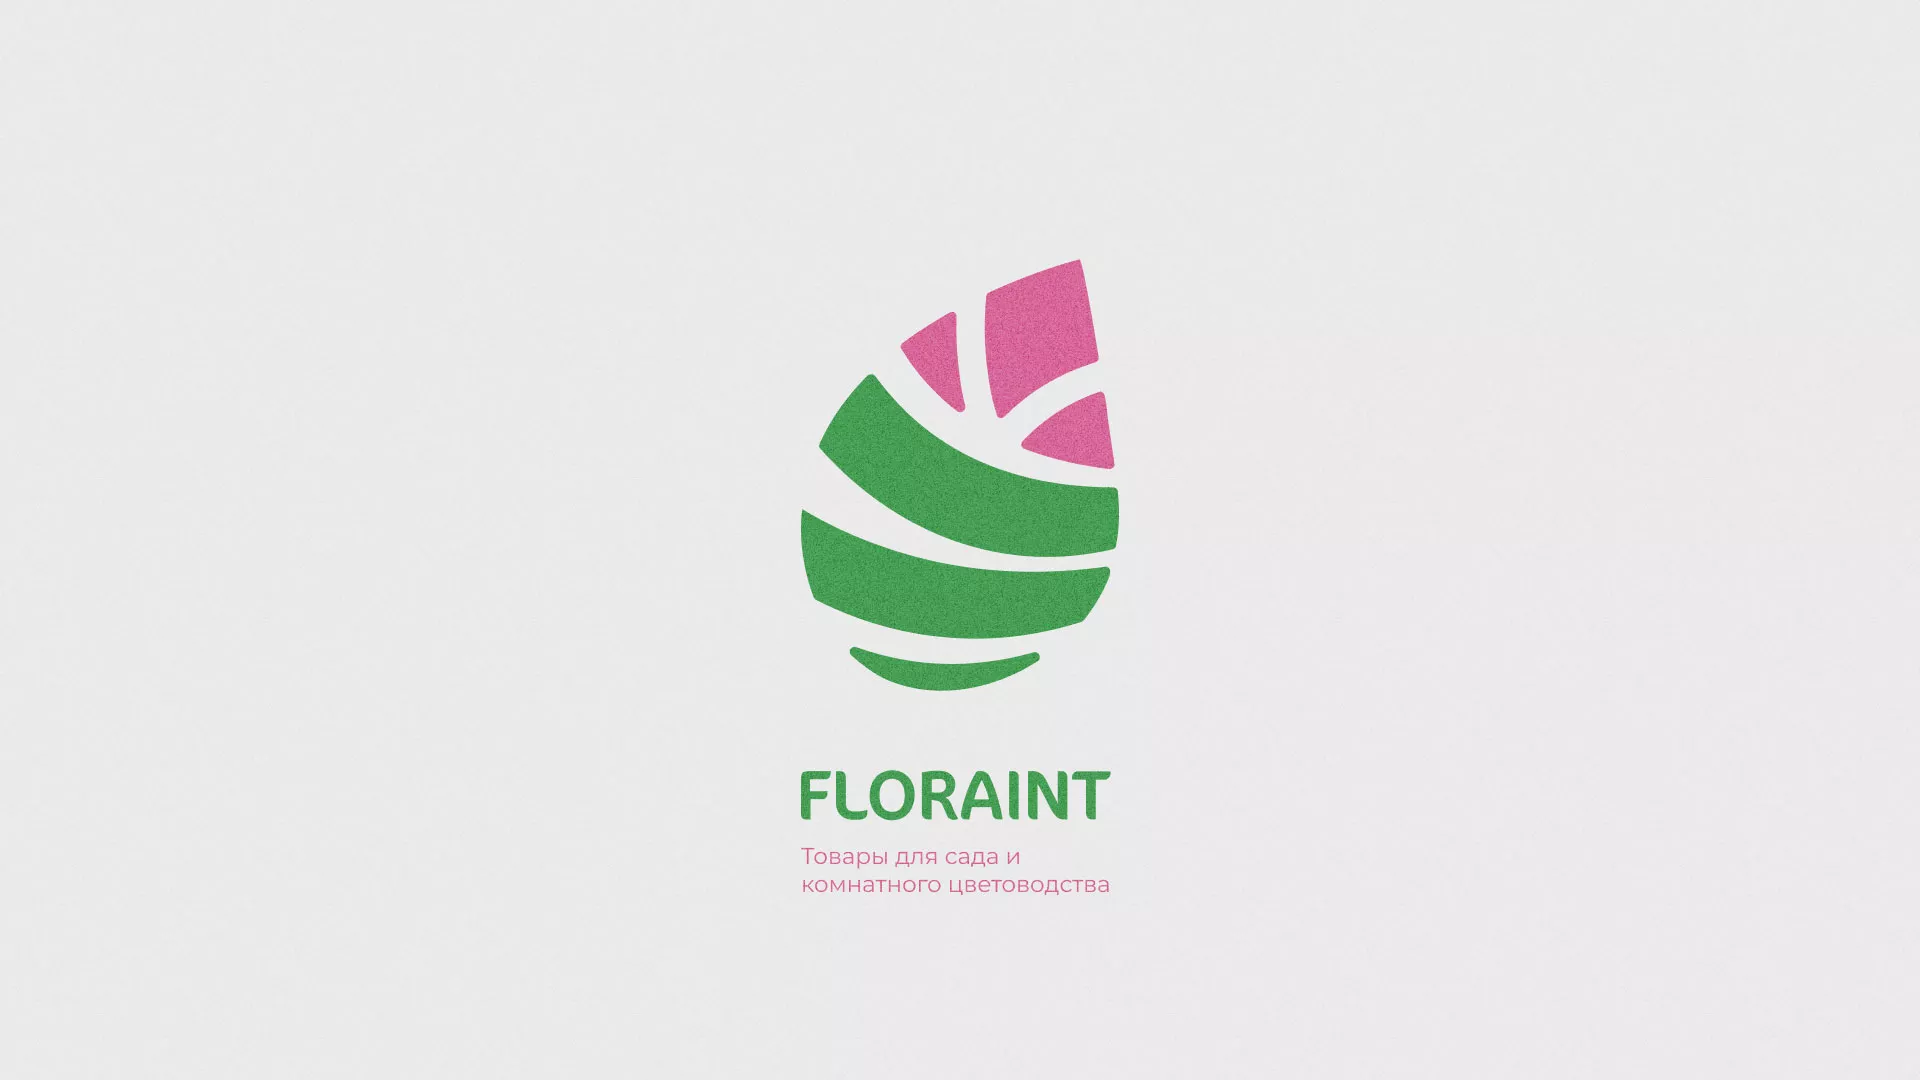 Разработка оформления профиля Instagram для магазина «Floraint» в Томске